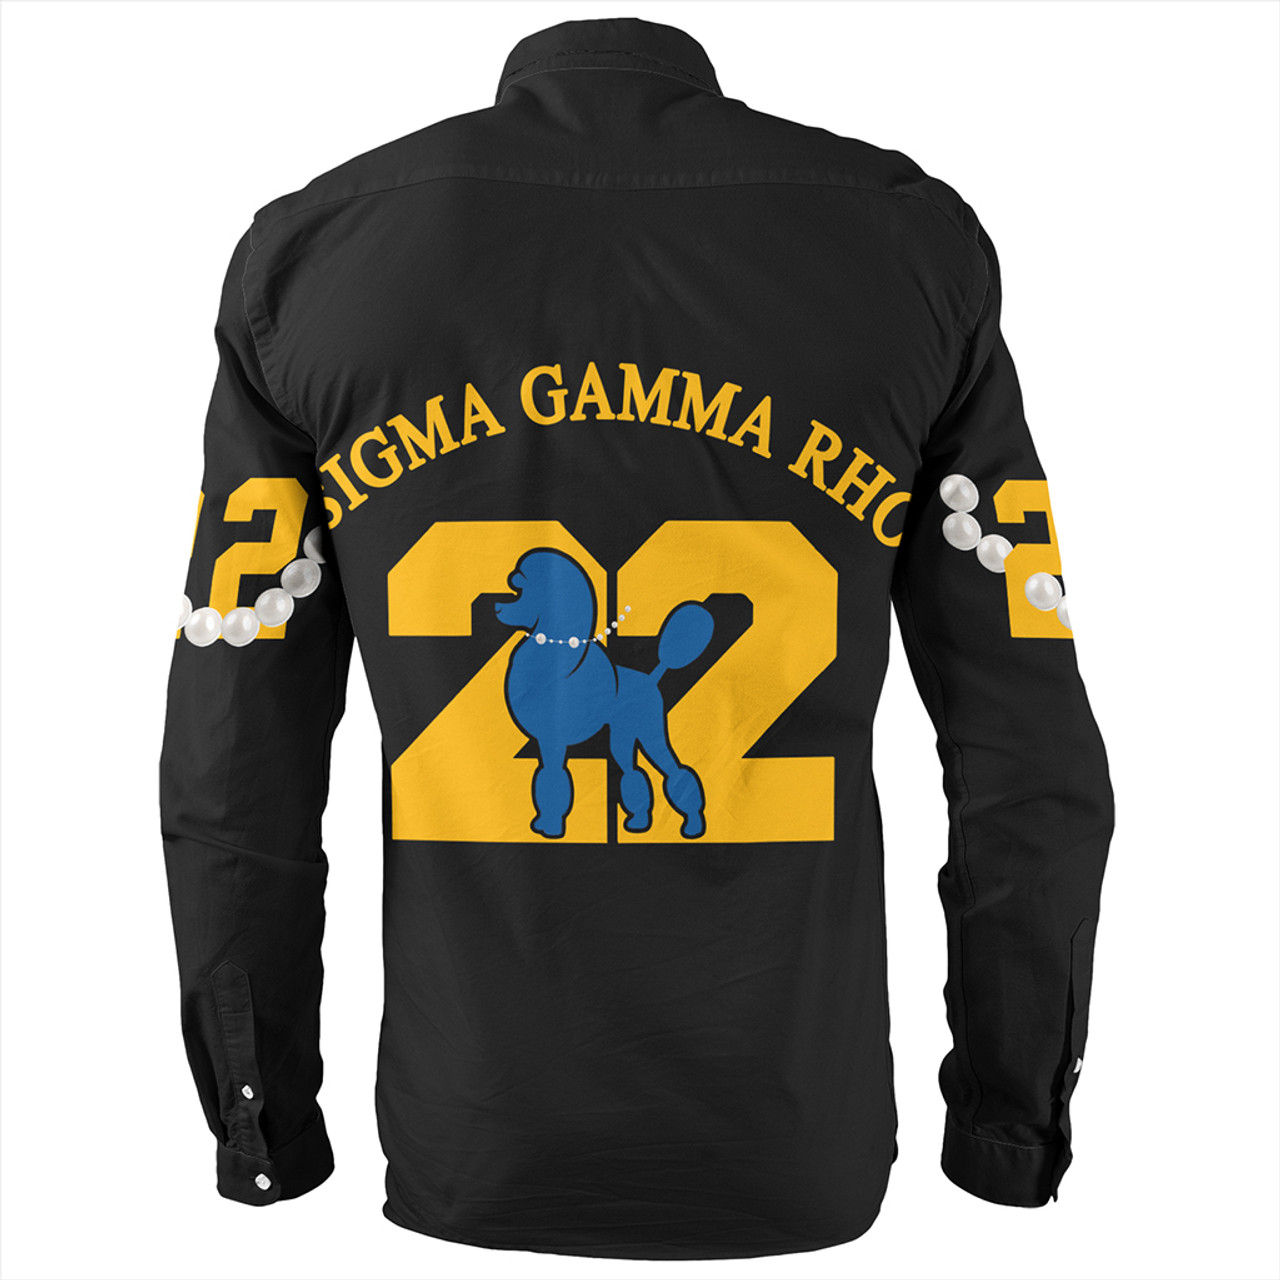 Sigma Gamma Rho Long Sleeve Shirt Pearls